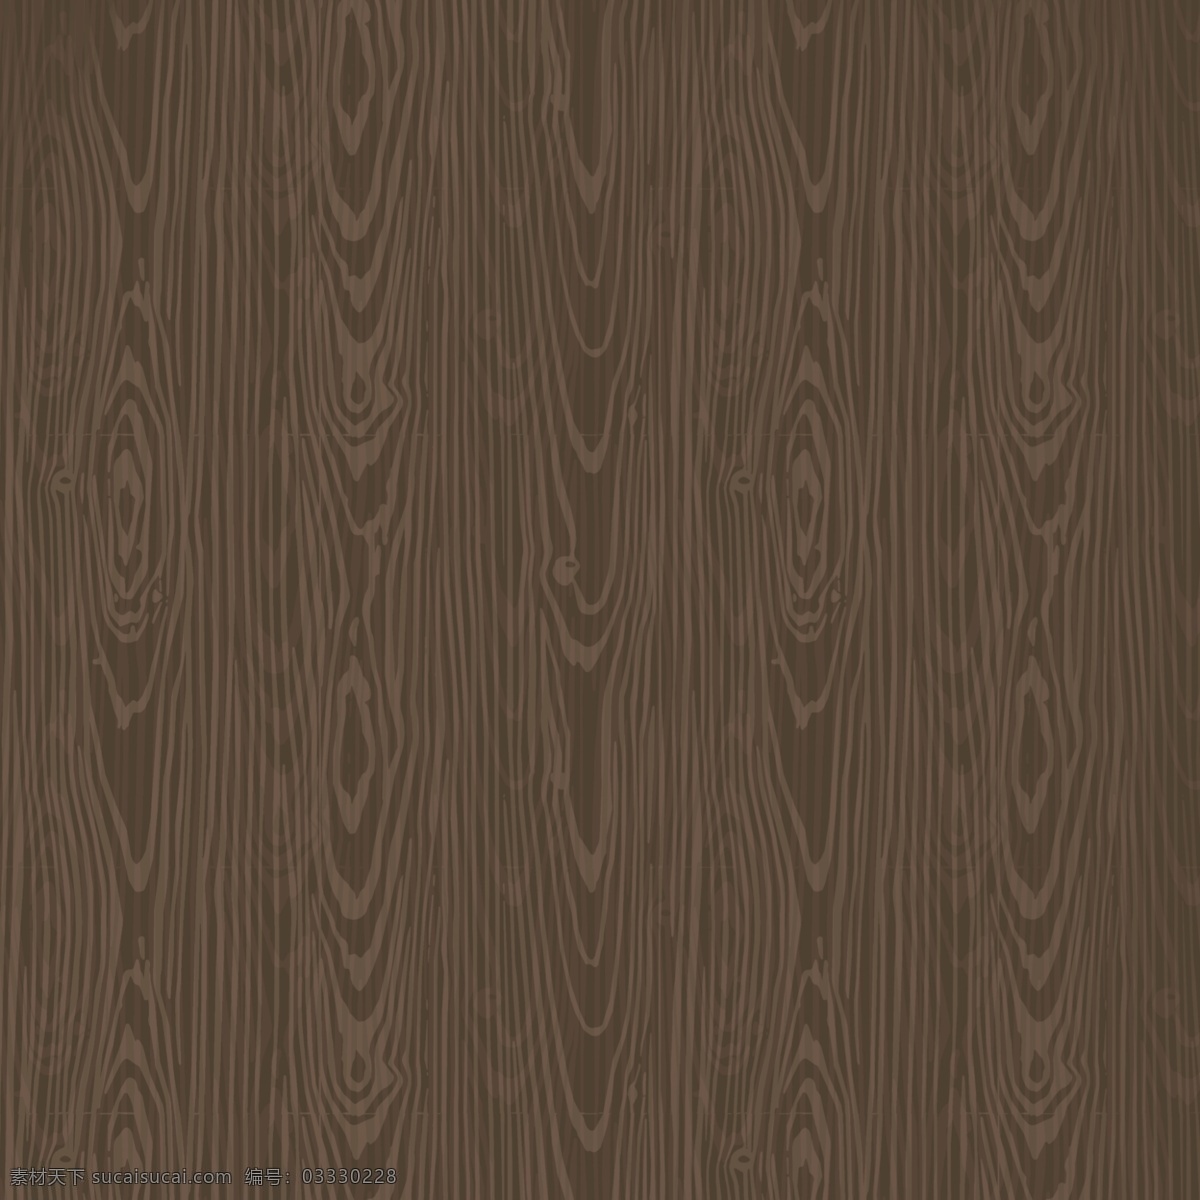 木板 木纹 纹理 深棕色 写实 木条 卡通 简 笔画 简约 勾线 免 扣 棕色 疏密 简笔画 免扣 拼接 黑木 深色木板